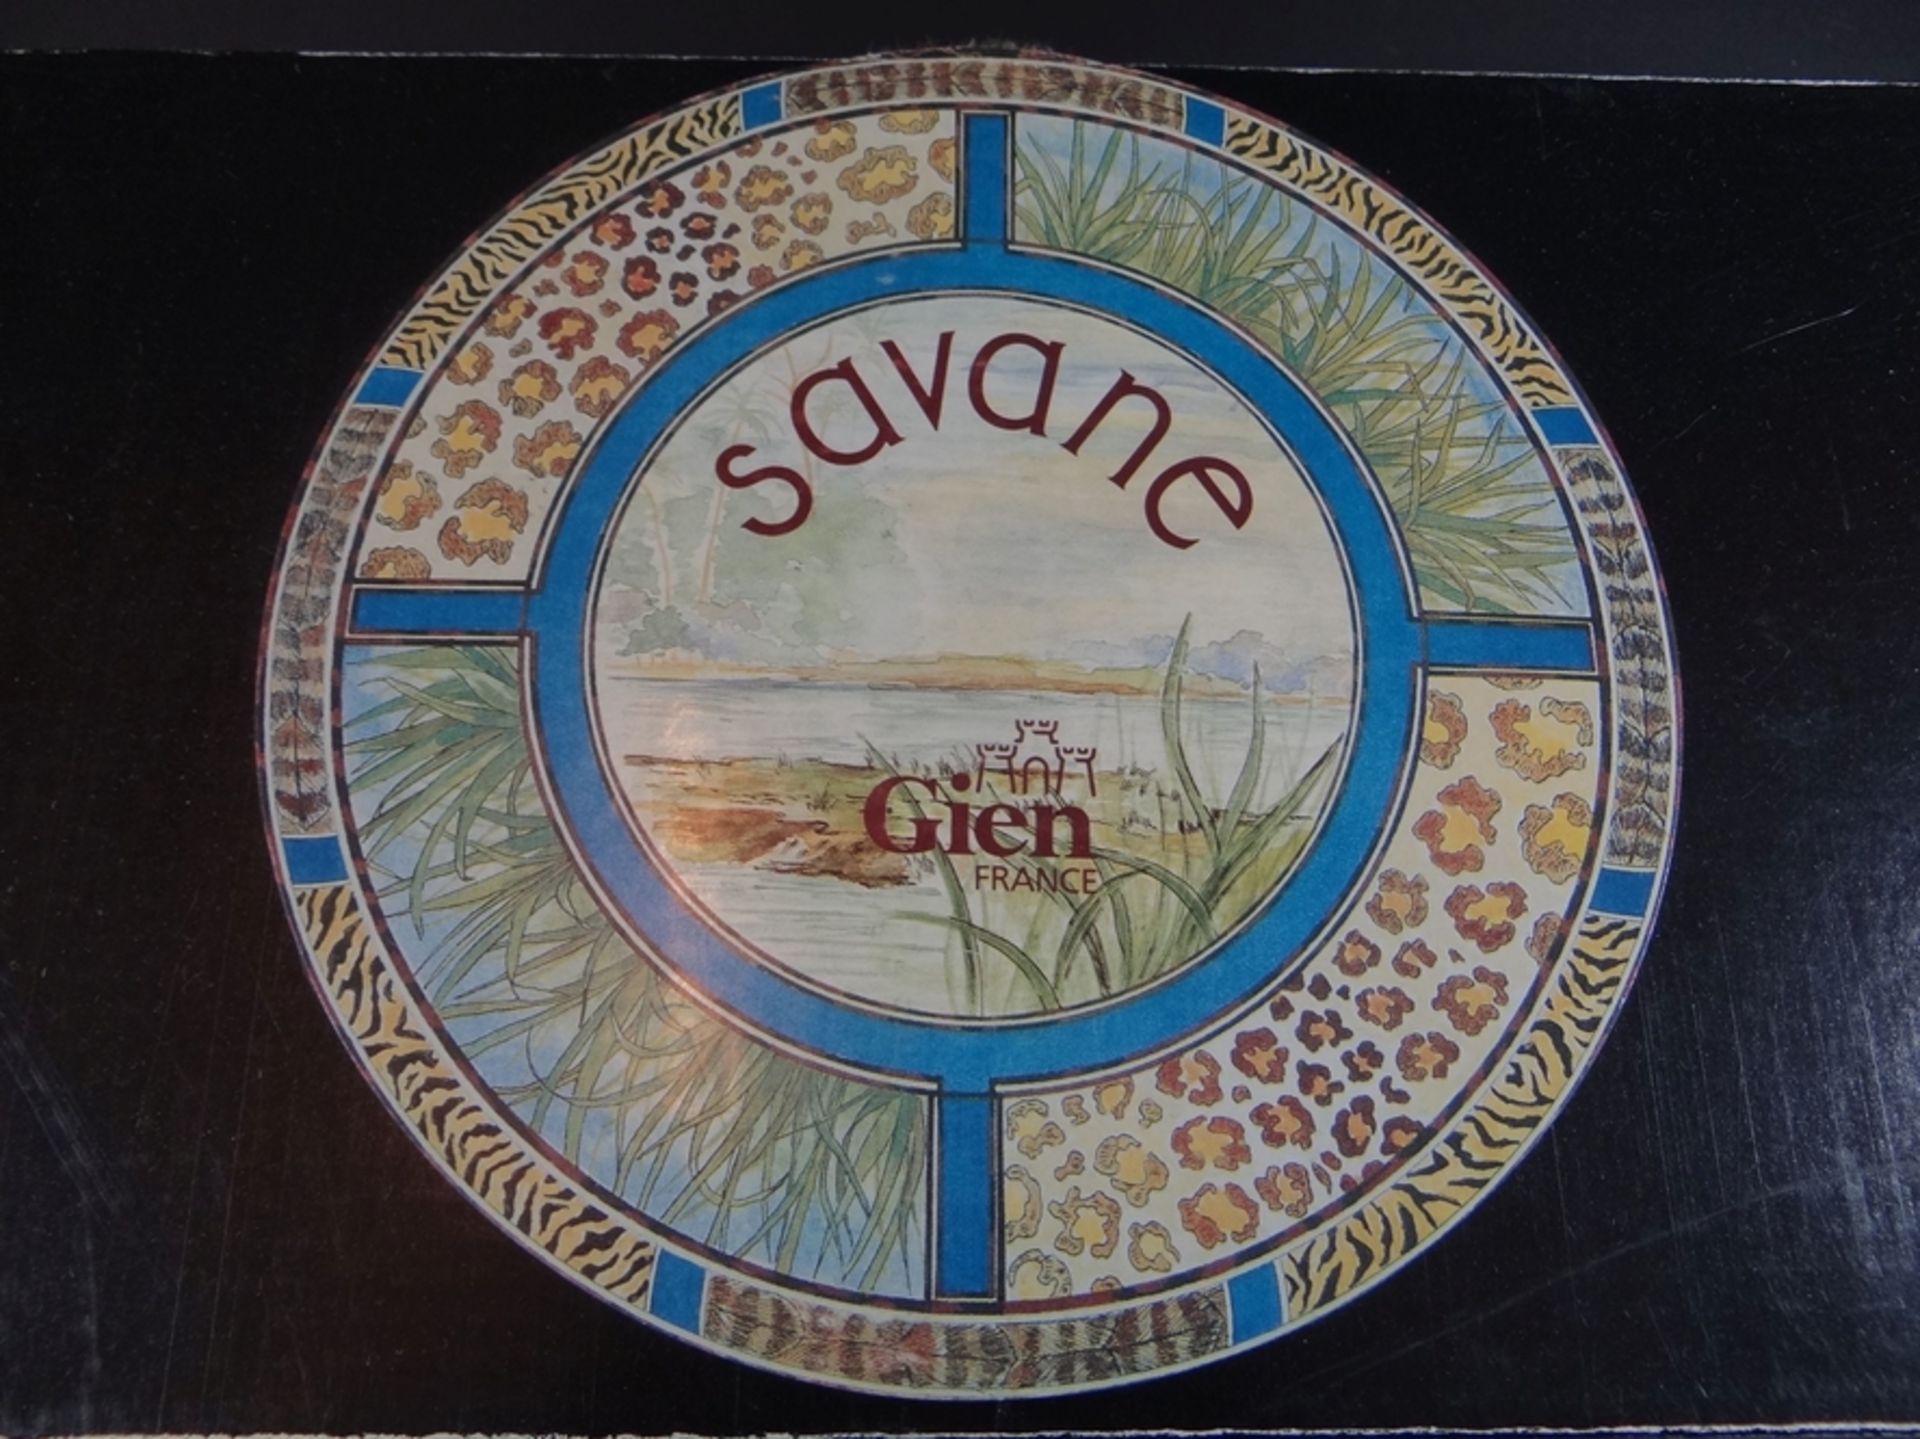 6 Schalen "Gien" France, Dekor Savane, neu in OVP - Bild 2 aus 7